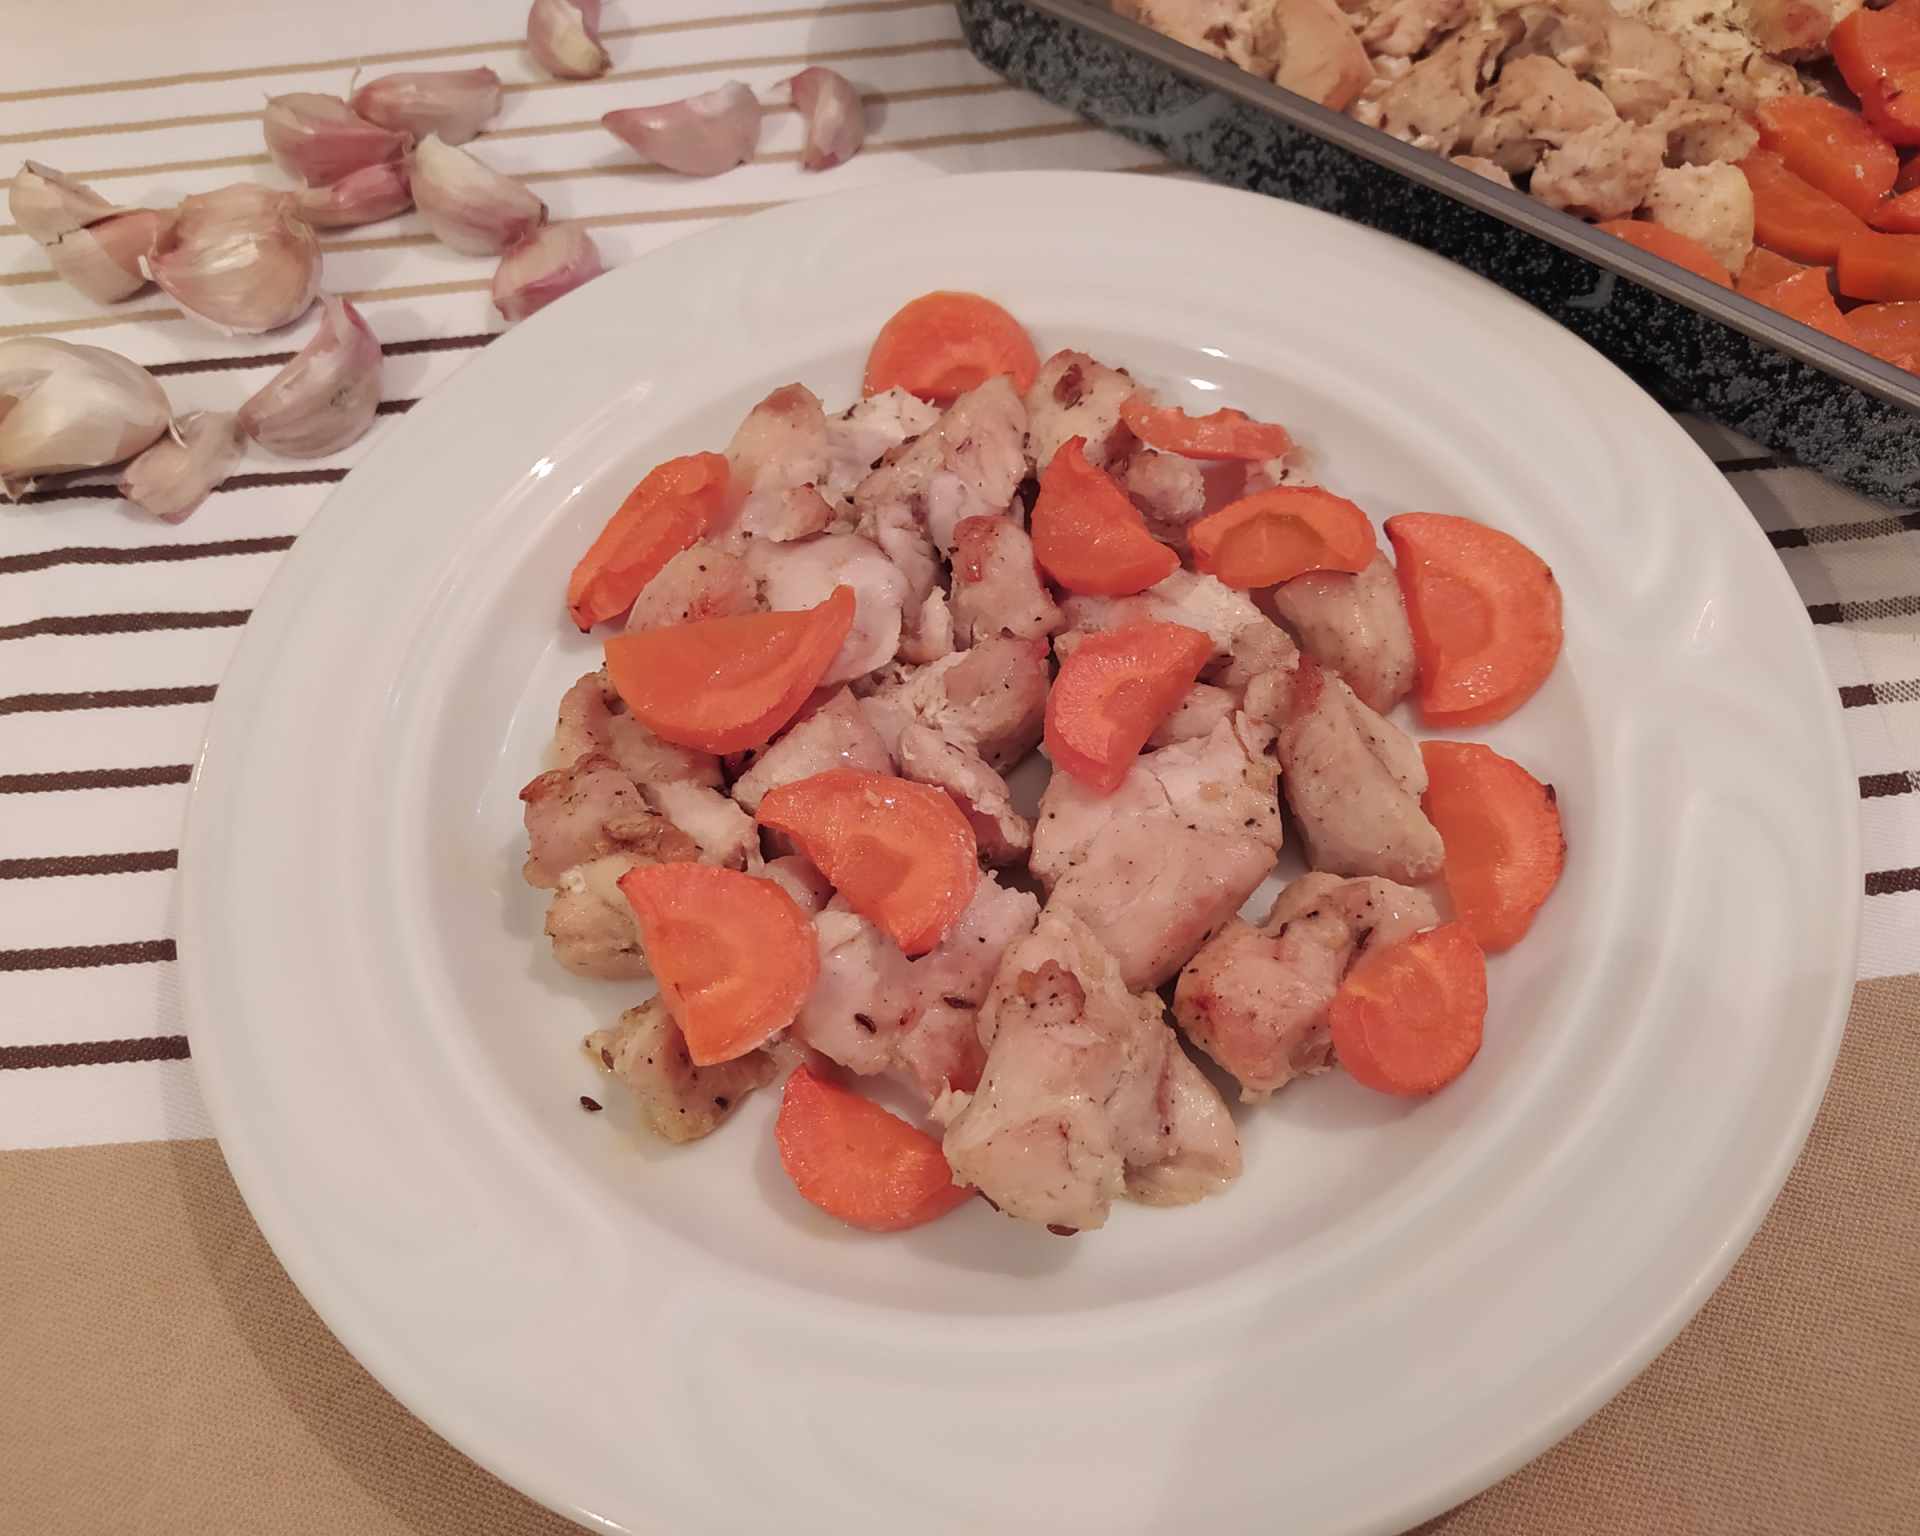 Upečené mäsko z kuraťa s krásne oranžovou upečenou mrkvou na bielom plytkom tanieri